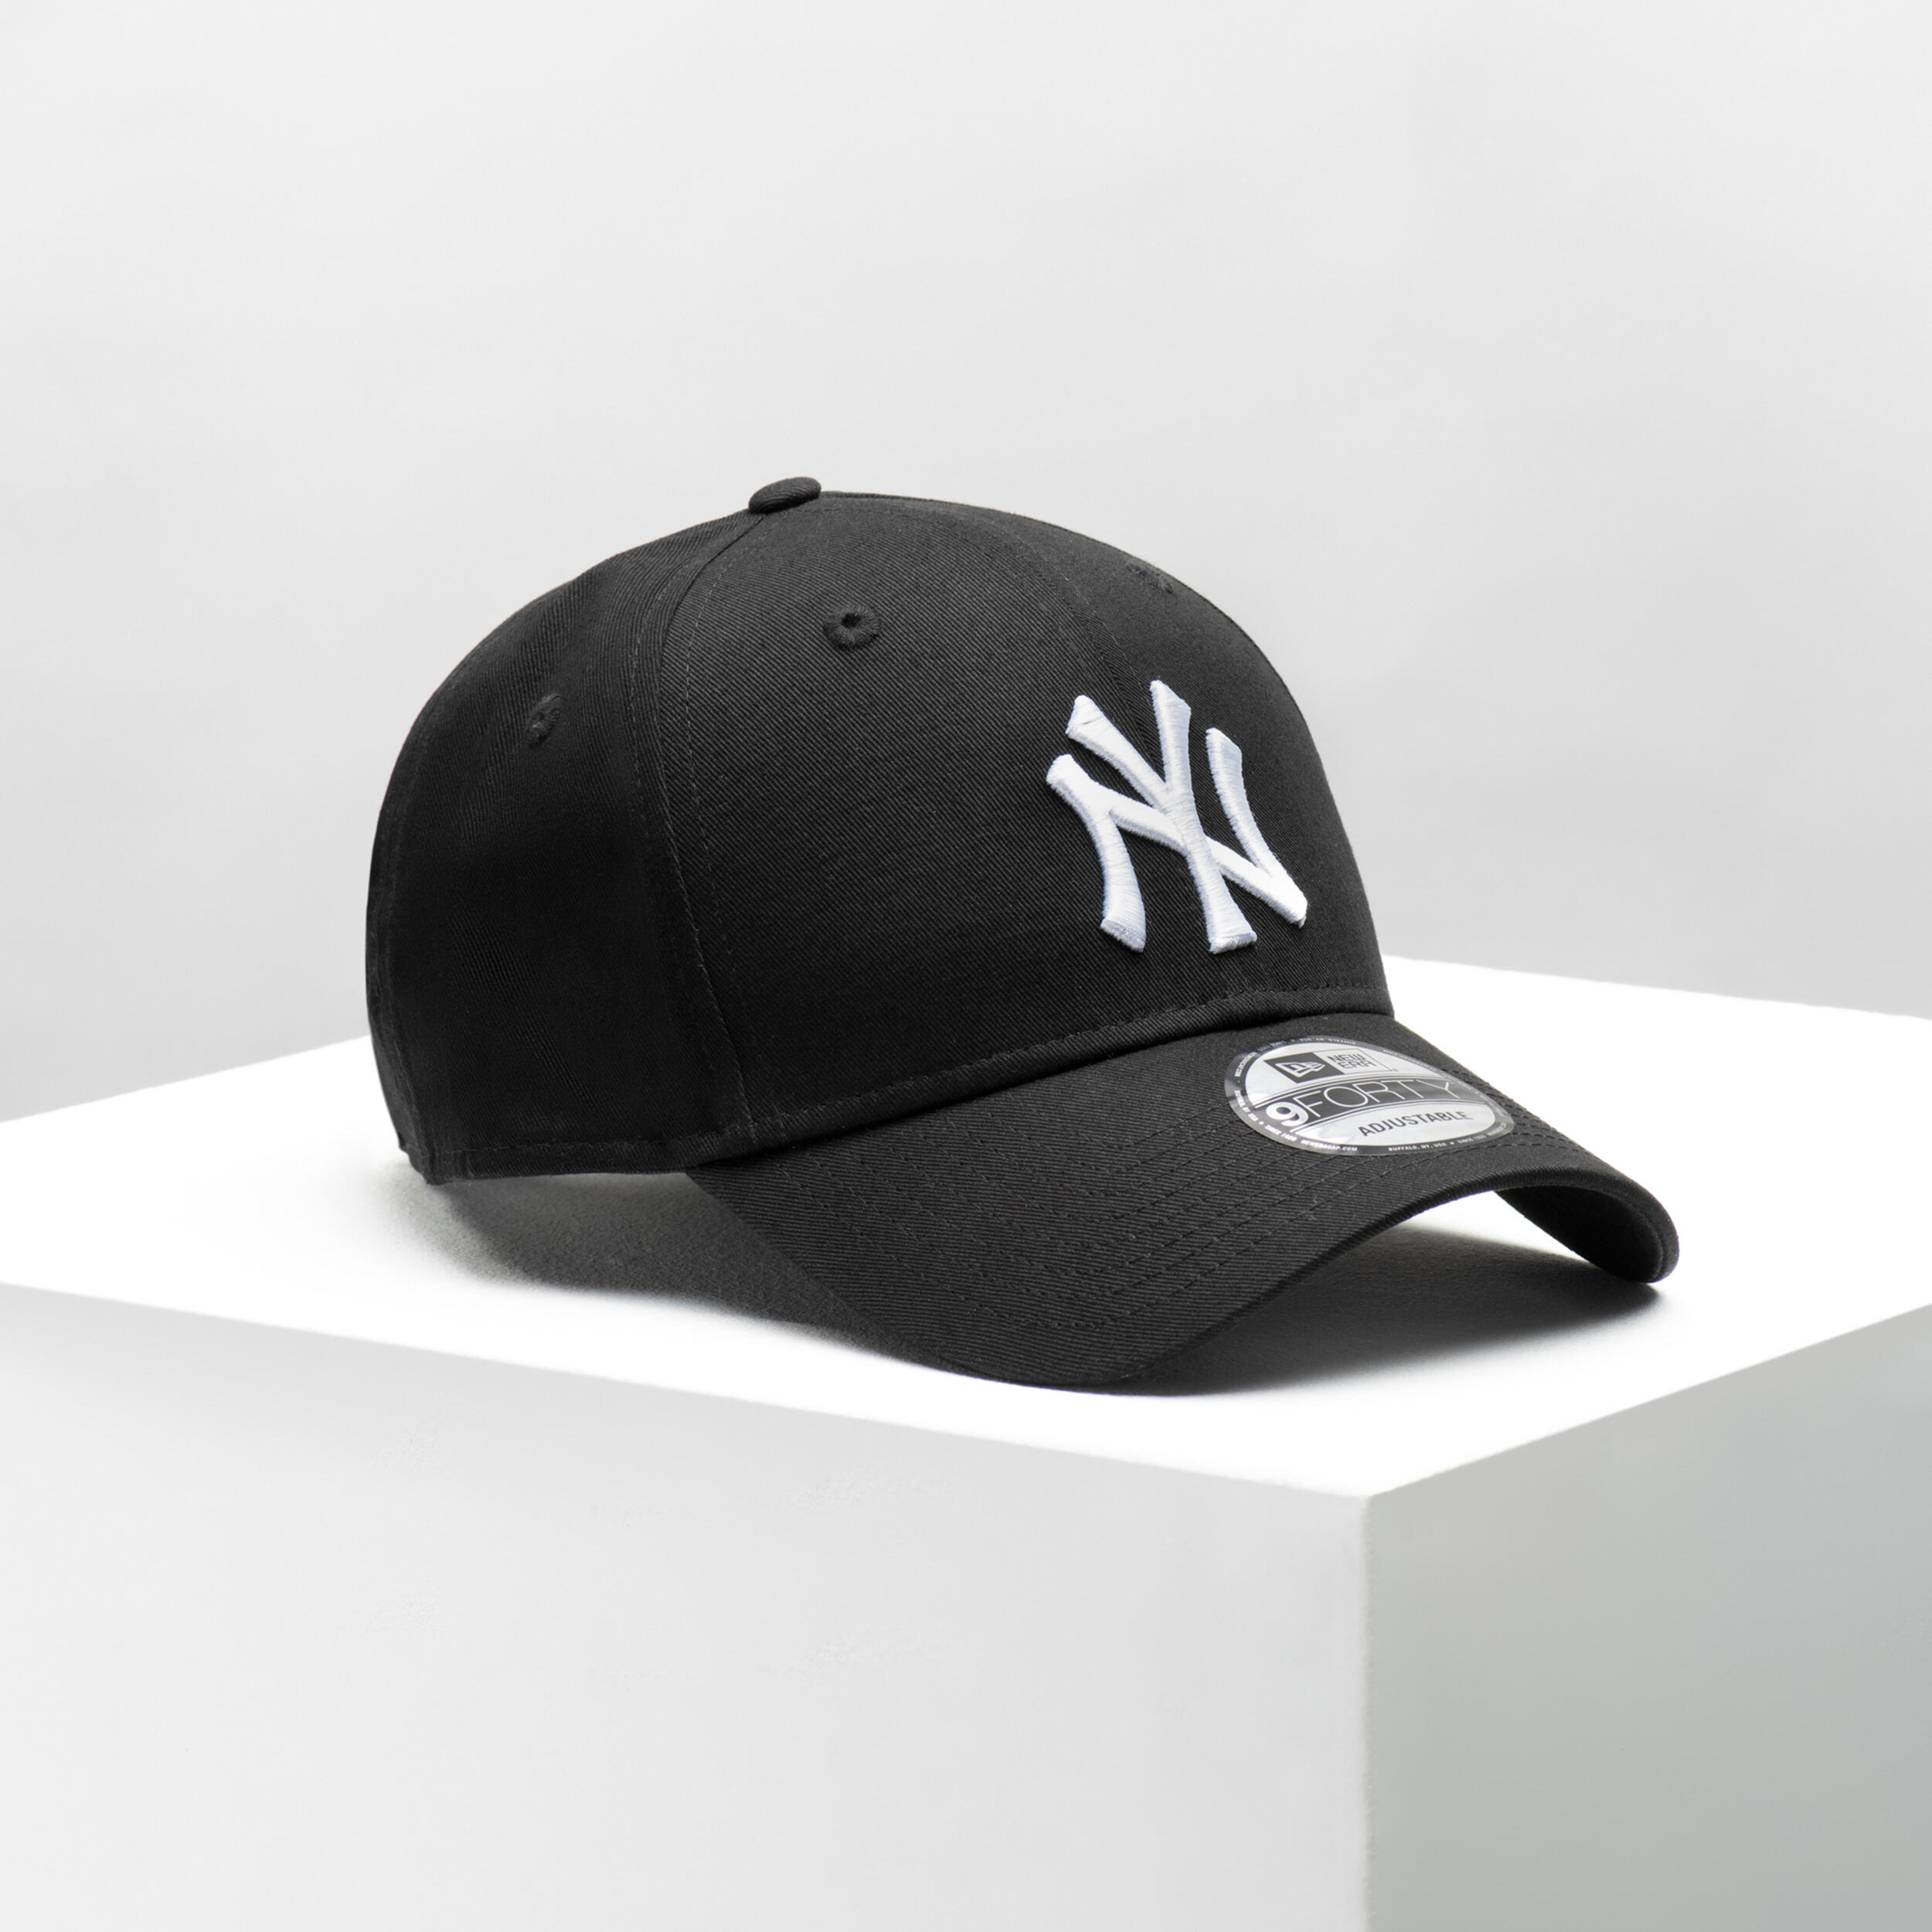 Men's/Women's Baseball Cap MLB - New York Yankees/White 2/7